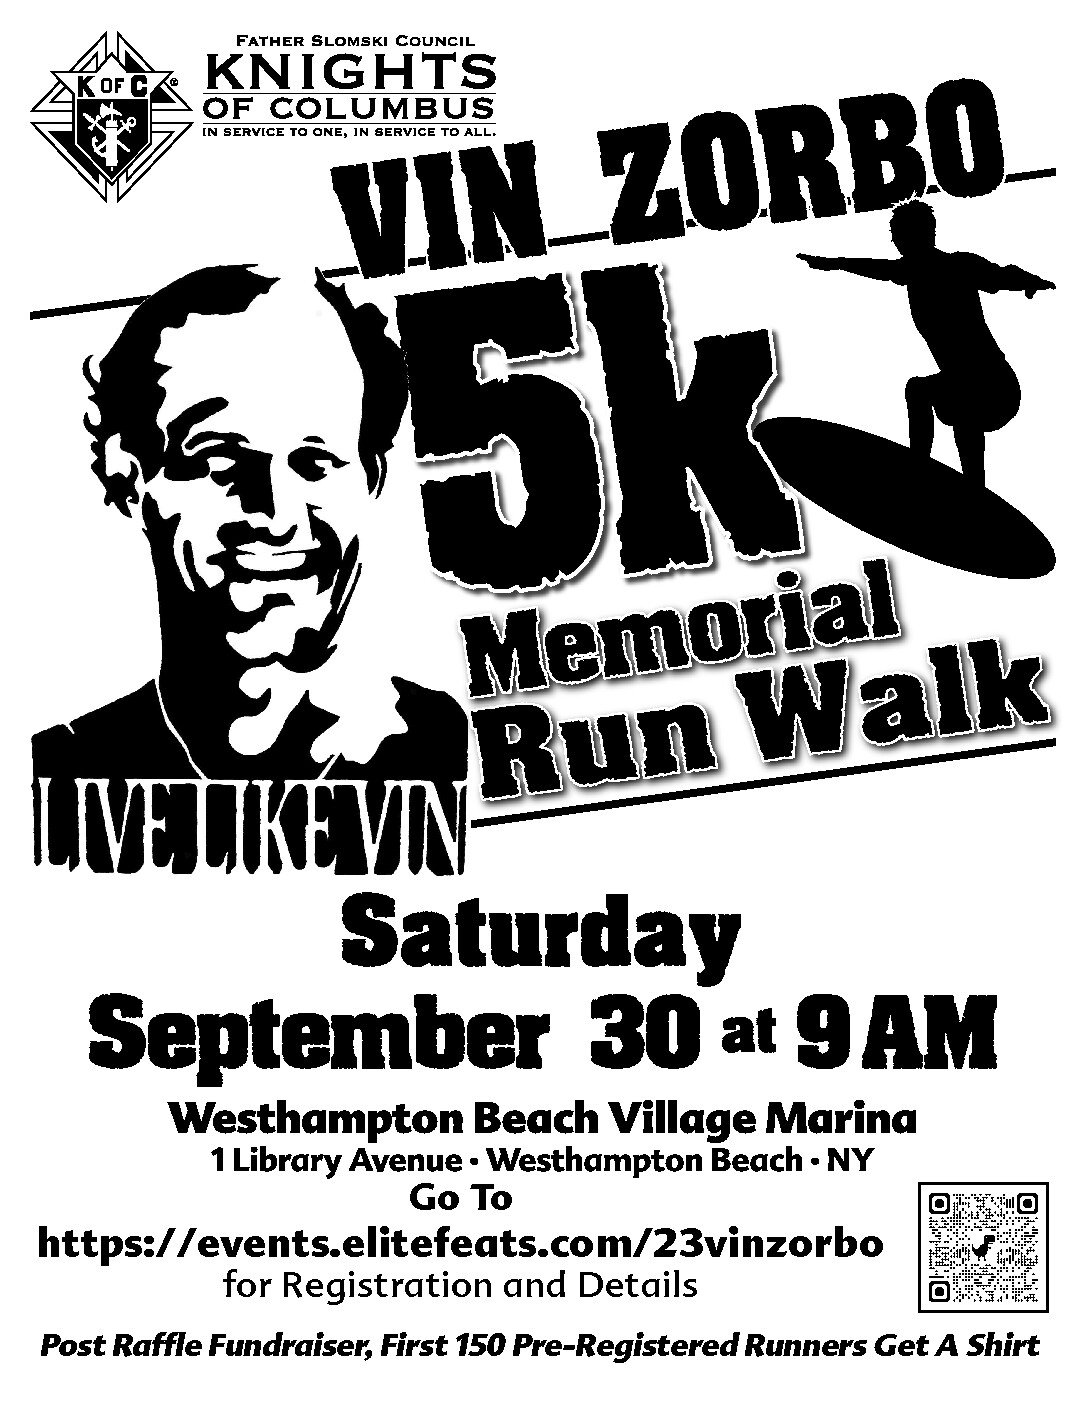 Vin Zorbo 5K Memorial Run Walk